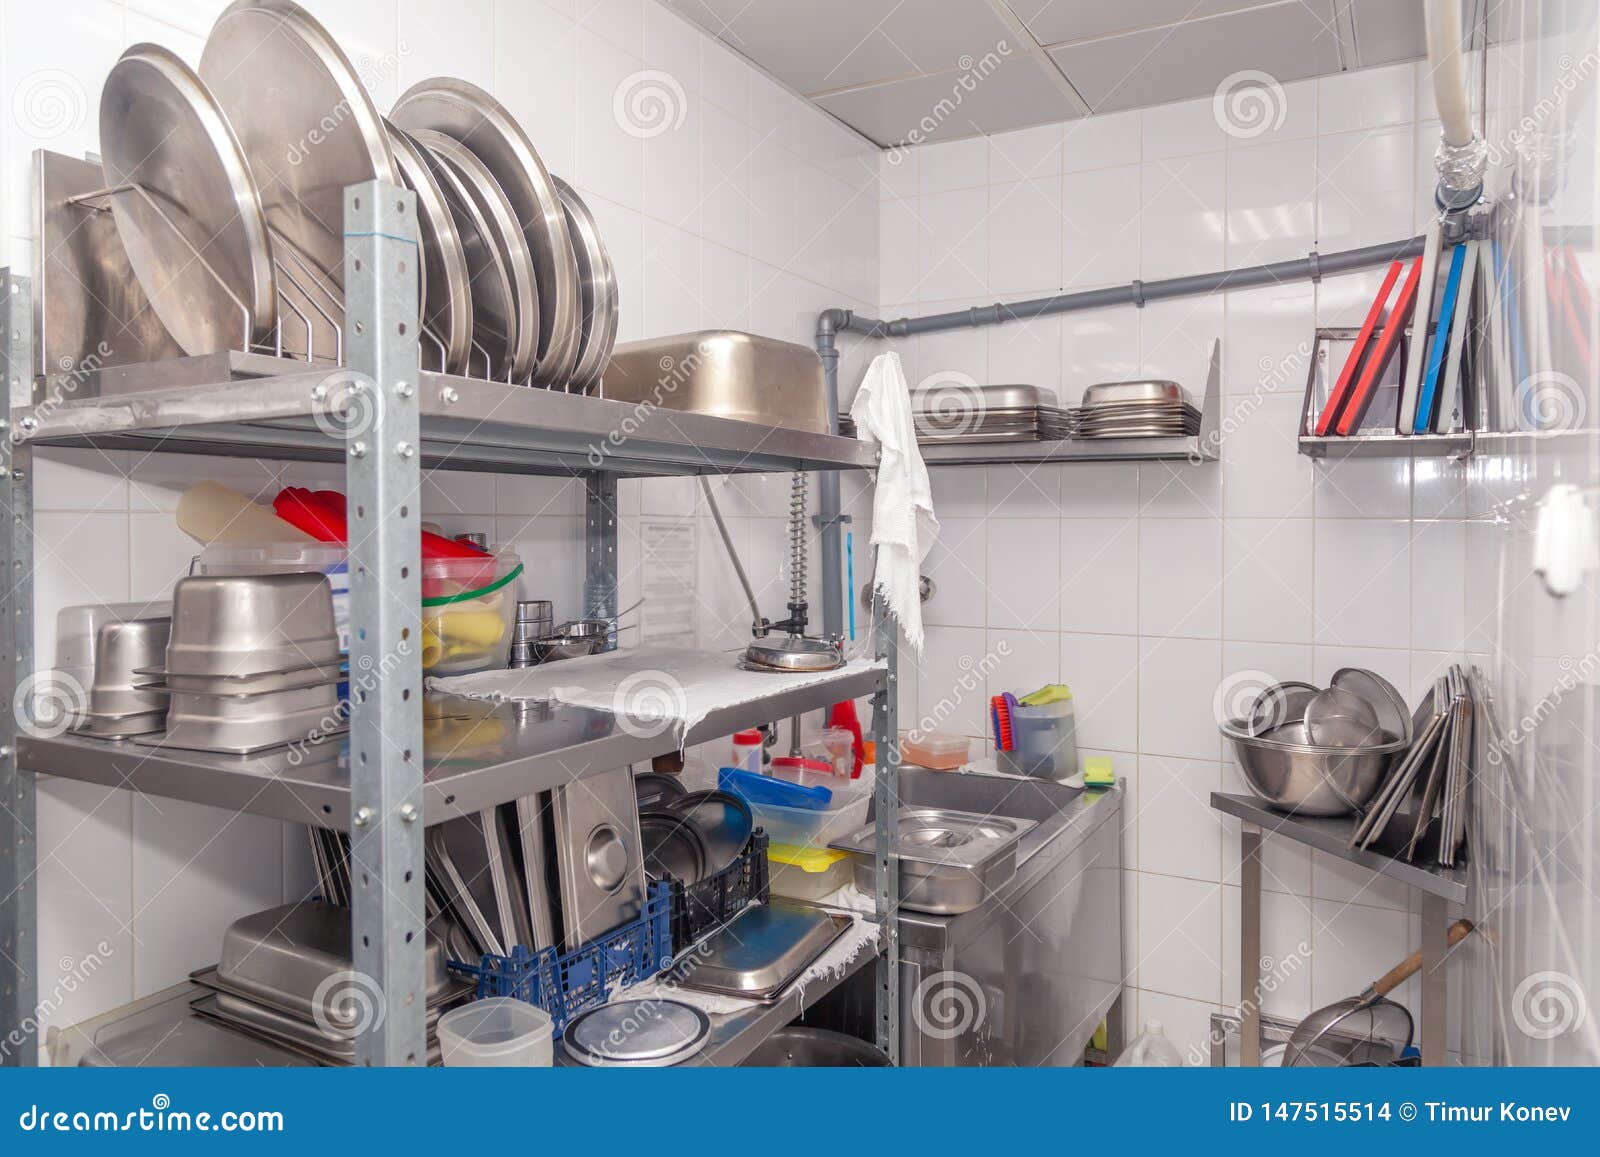 餐馆的专业洗衣机 水槽 刷子 金属棚架和架子看法与厨房用具 杯子 切板 库存照片 图片包括有架子 餐馆